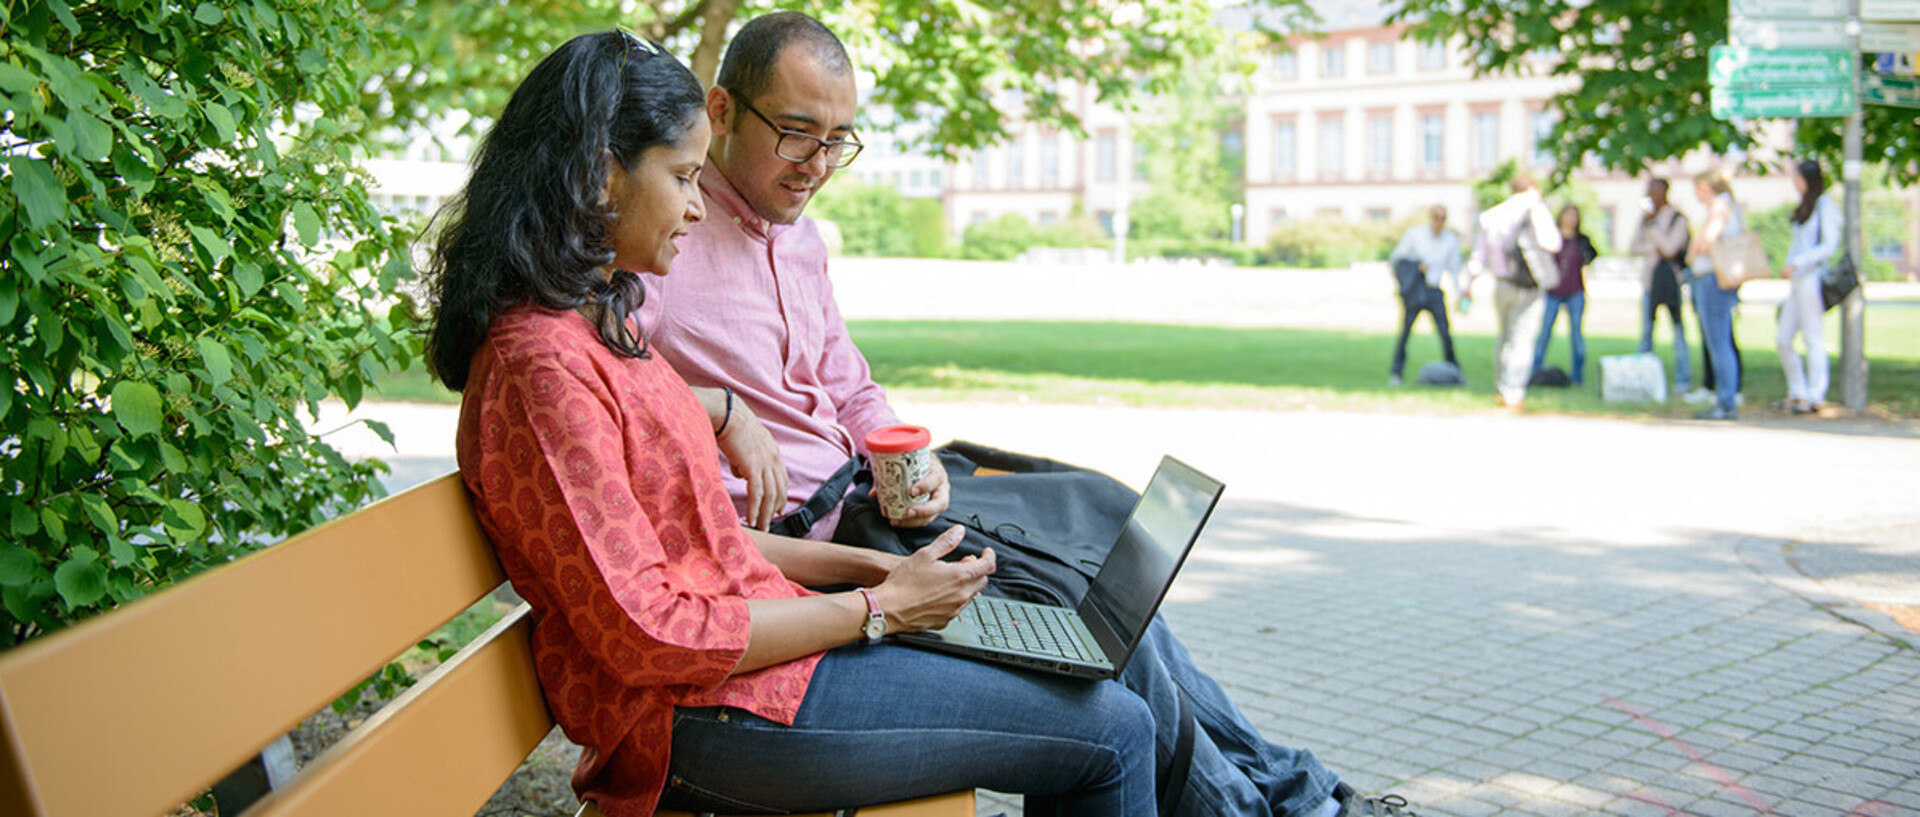 Zwei Personen sitzen mit einem Laptop auf einer Bank